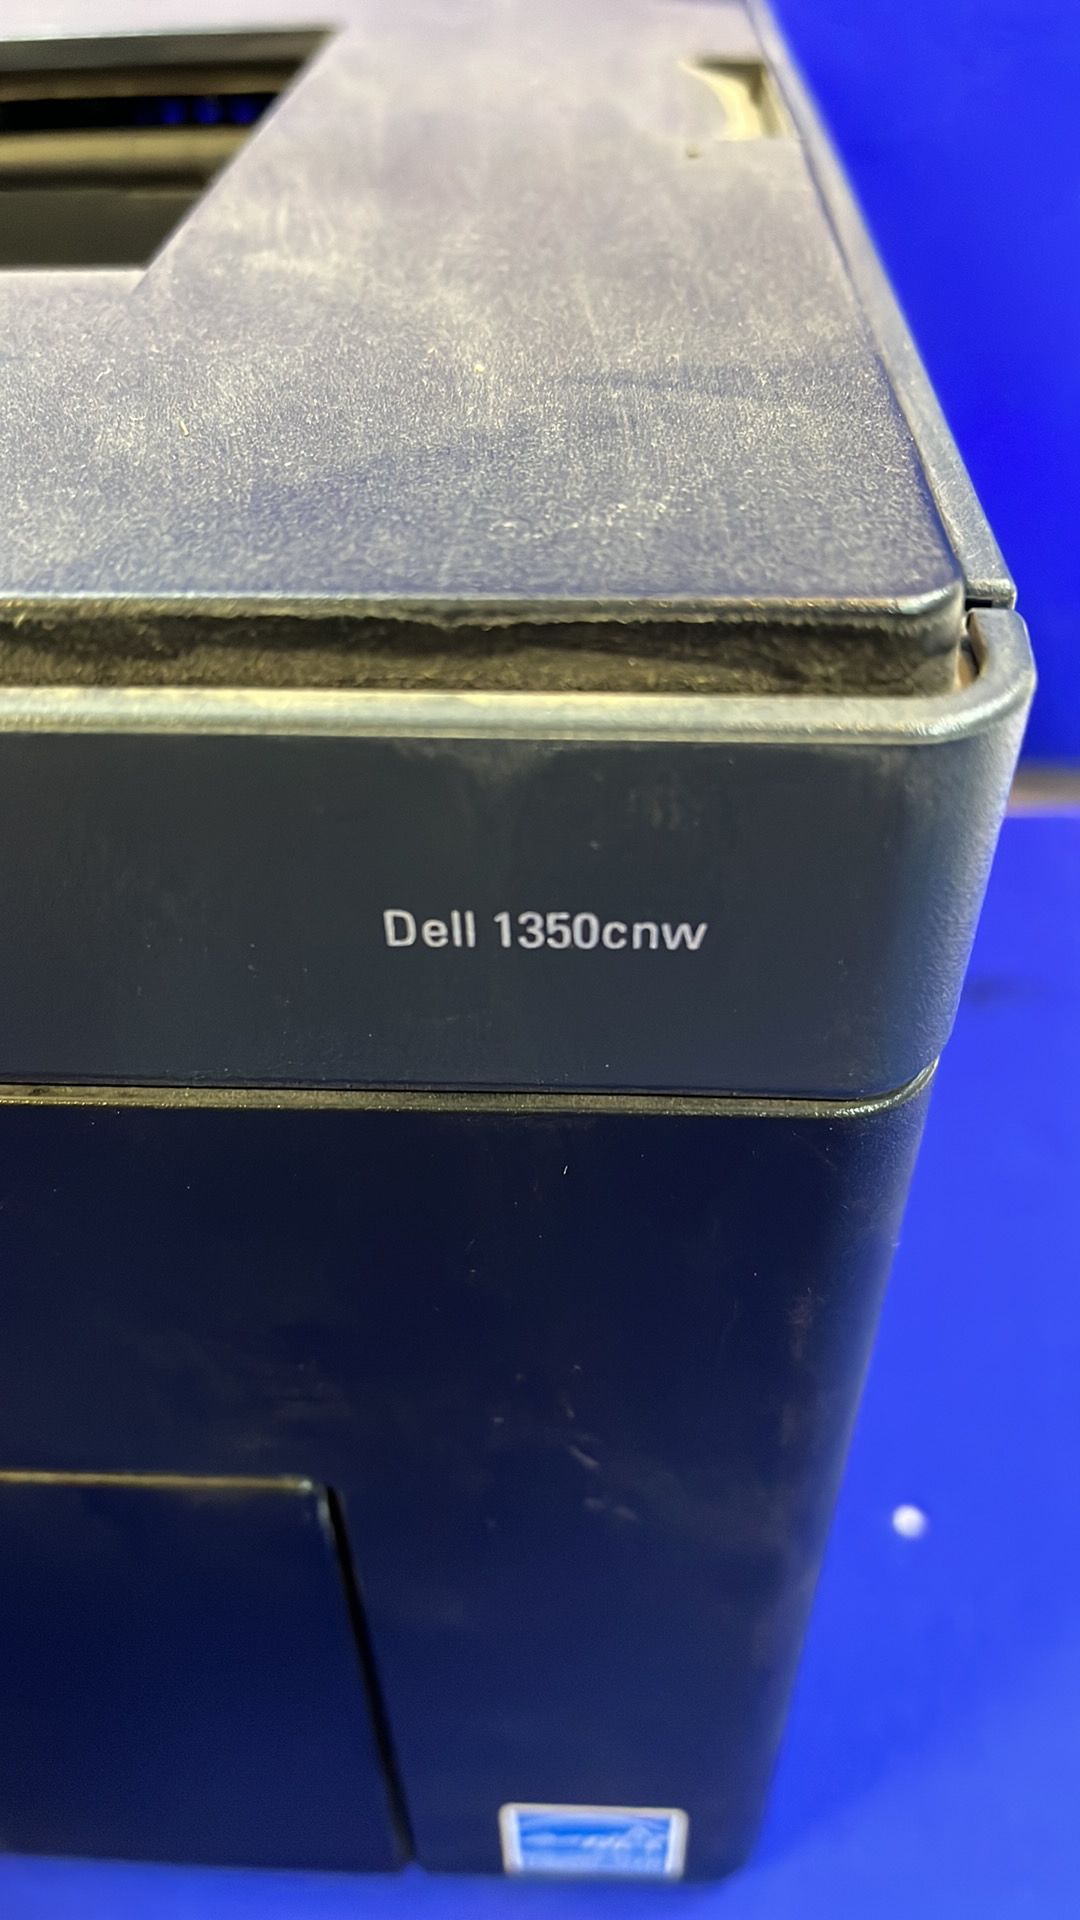 Dell 1350CNW Colour Printer - Image 3 of 4